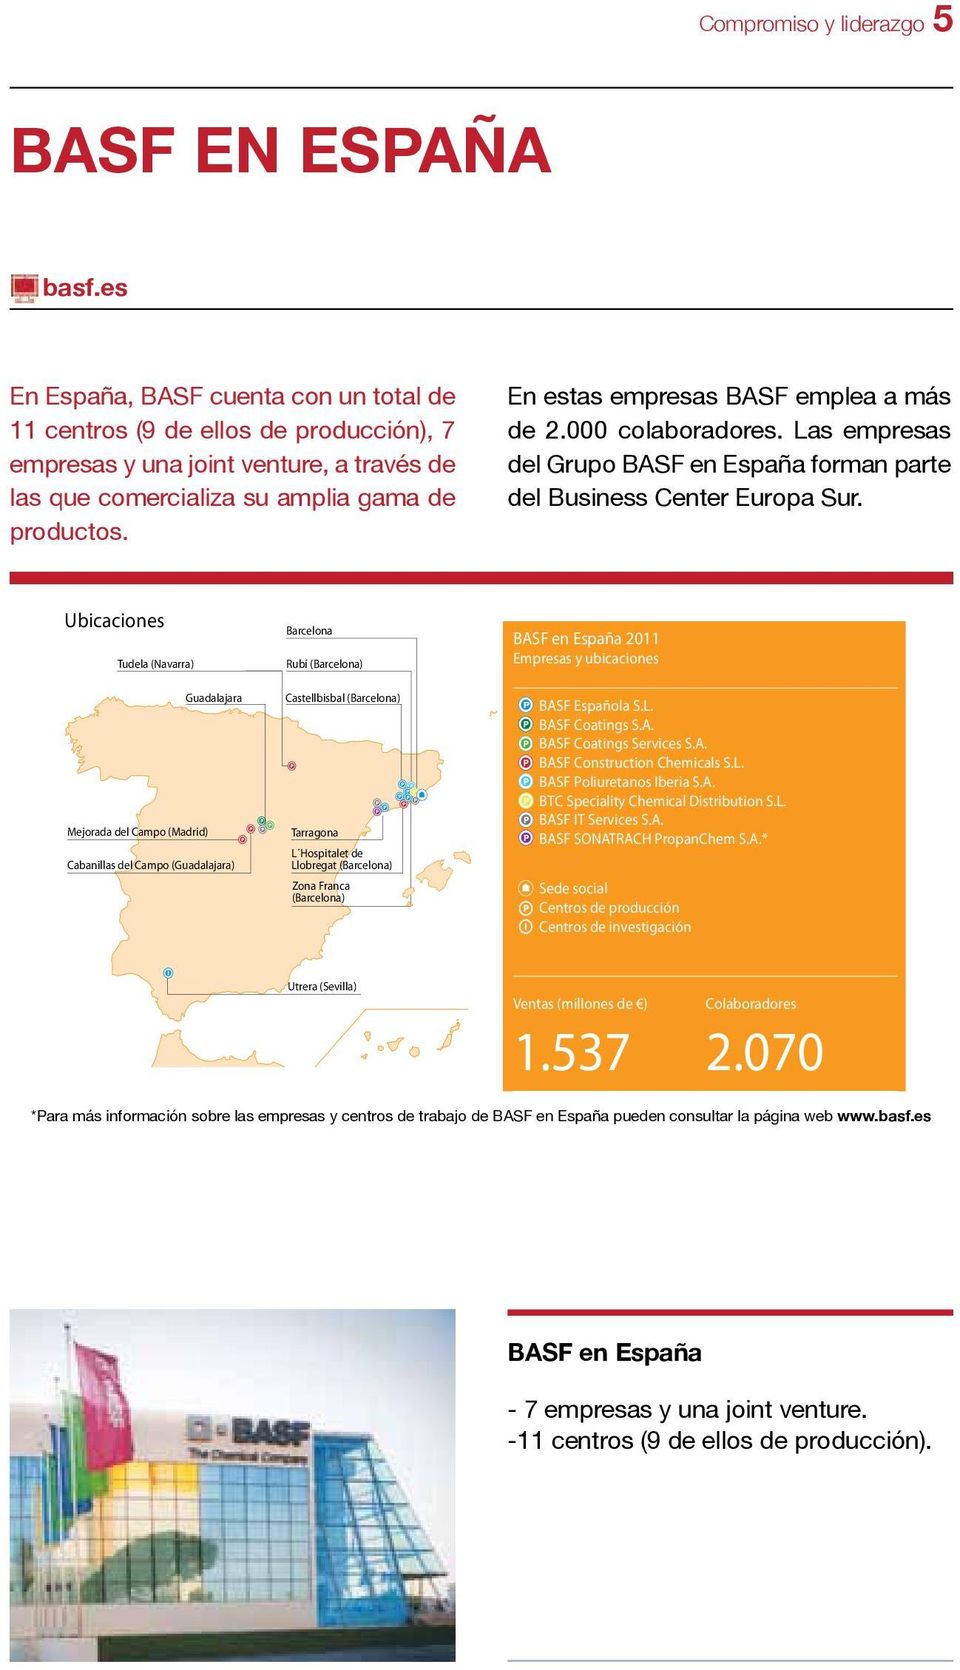 En estas empresas BASF emplea a más de 2.000 colaboradores. Las empresas del Grupo BASF en España forman parte del Business Center Europa Sur.